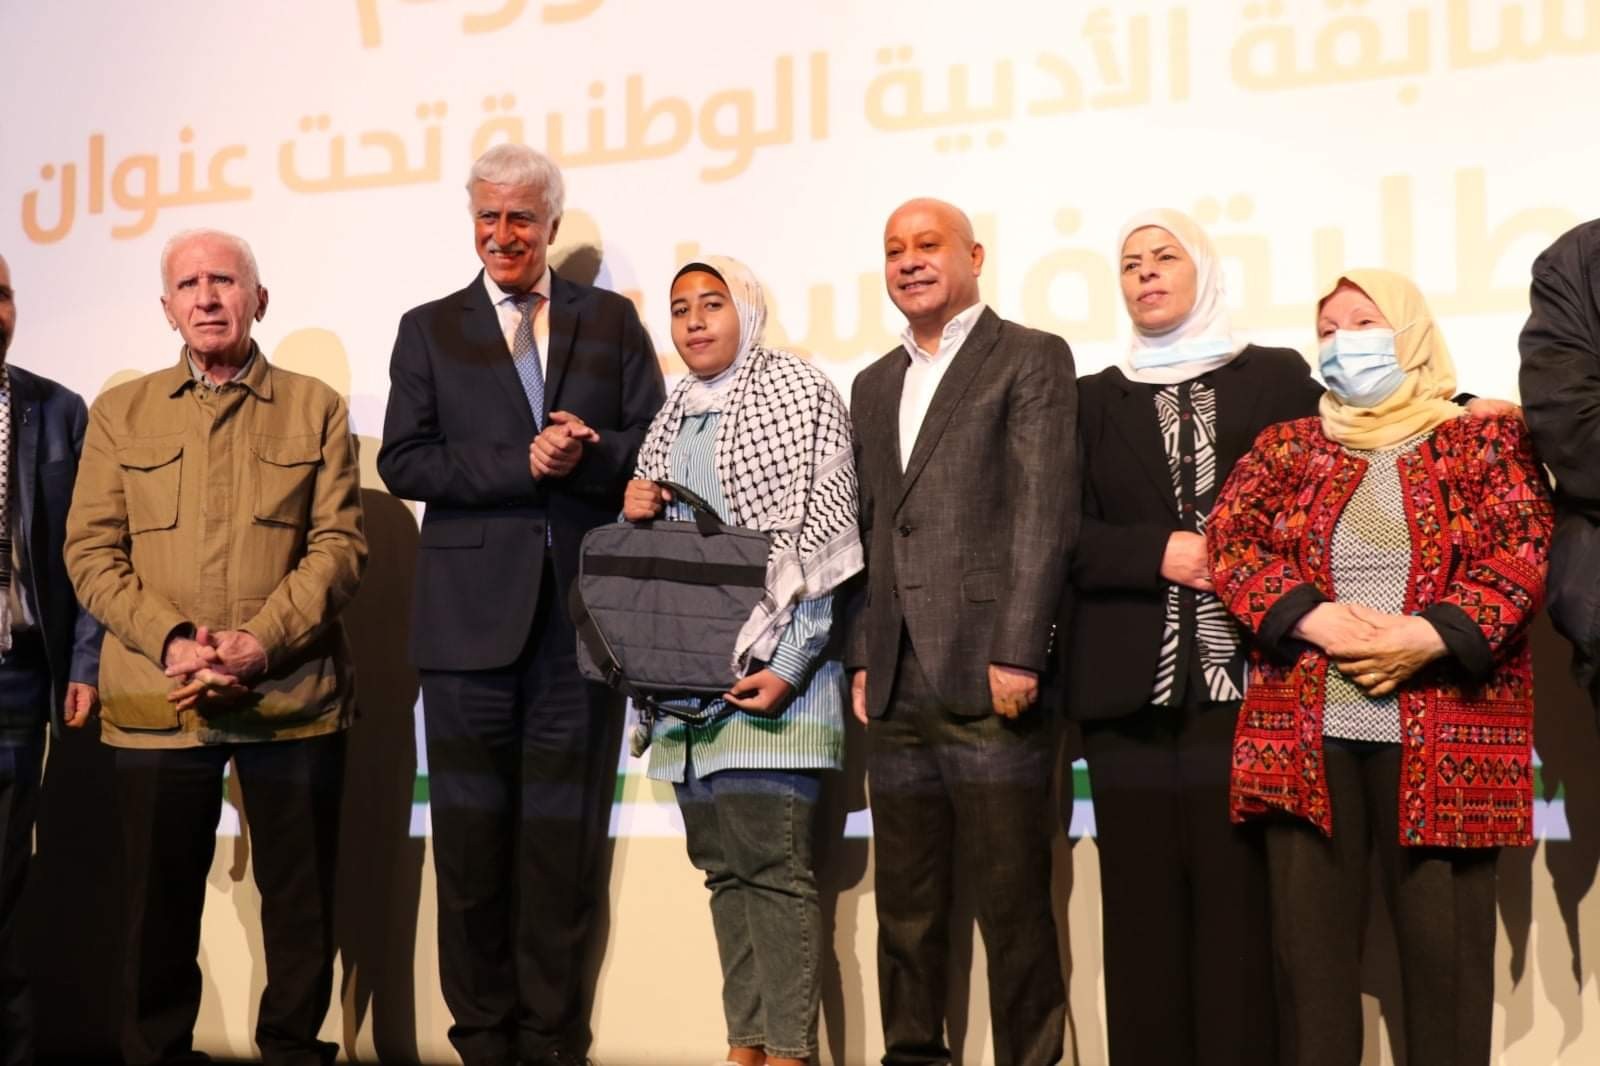 حفل نظمته اليوم دائرة شؤون اللاجئين بالتعاون مع وزارة التربية والتعليم لتكريم الفائزين في المسابقة الأدبية لطلبة المدارس في فلسطين